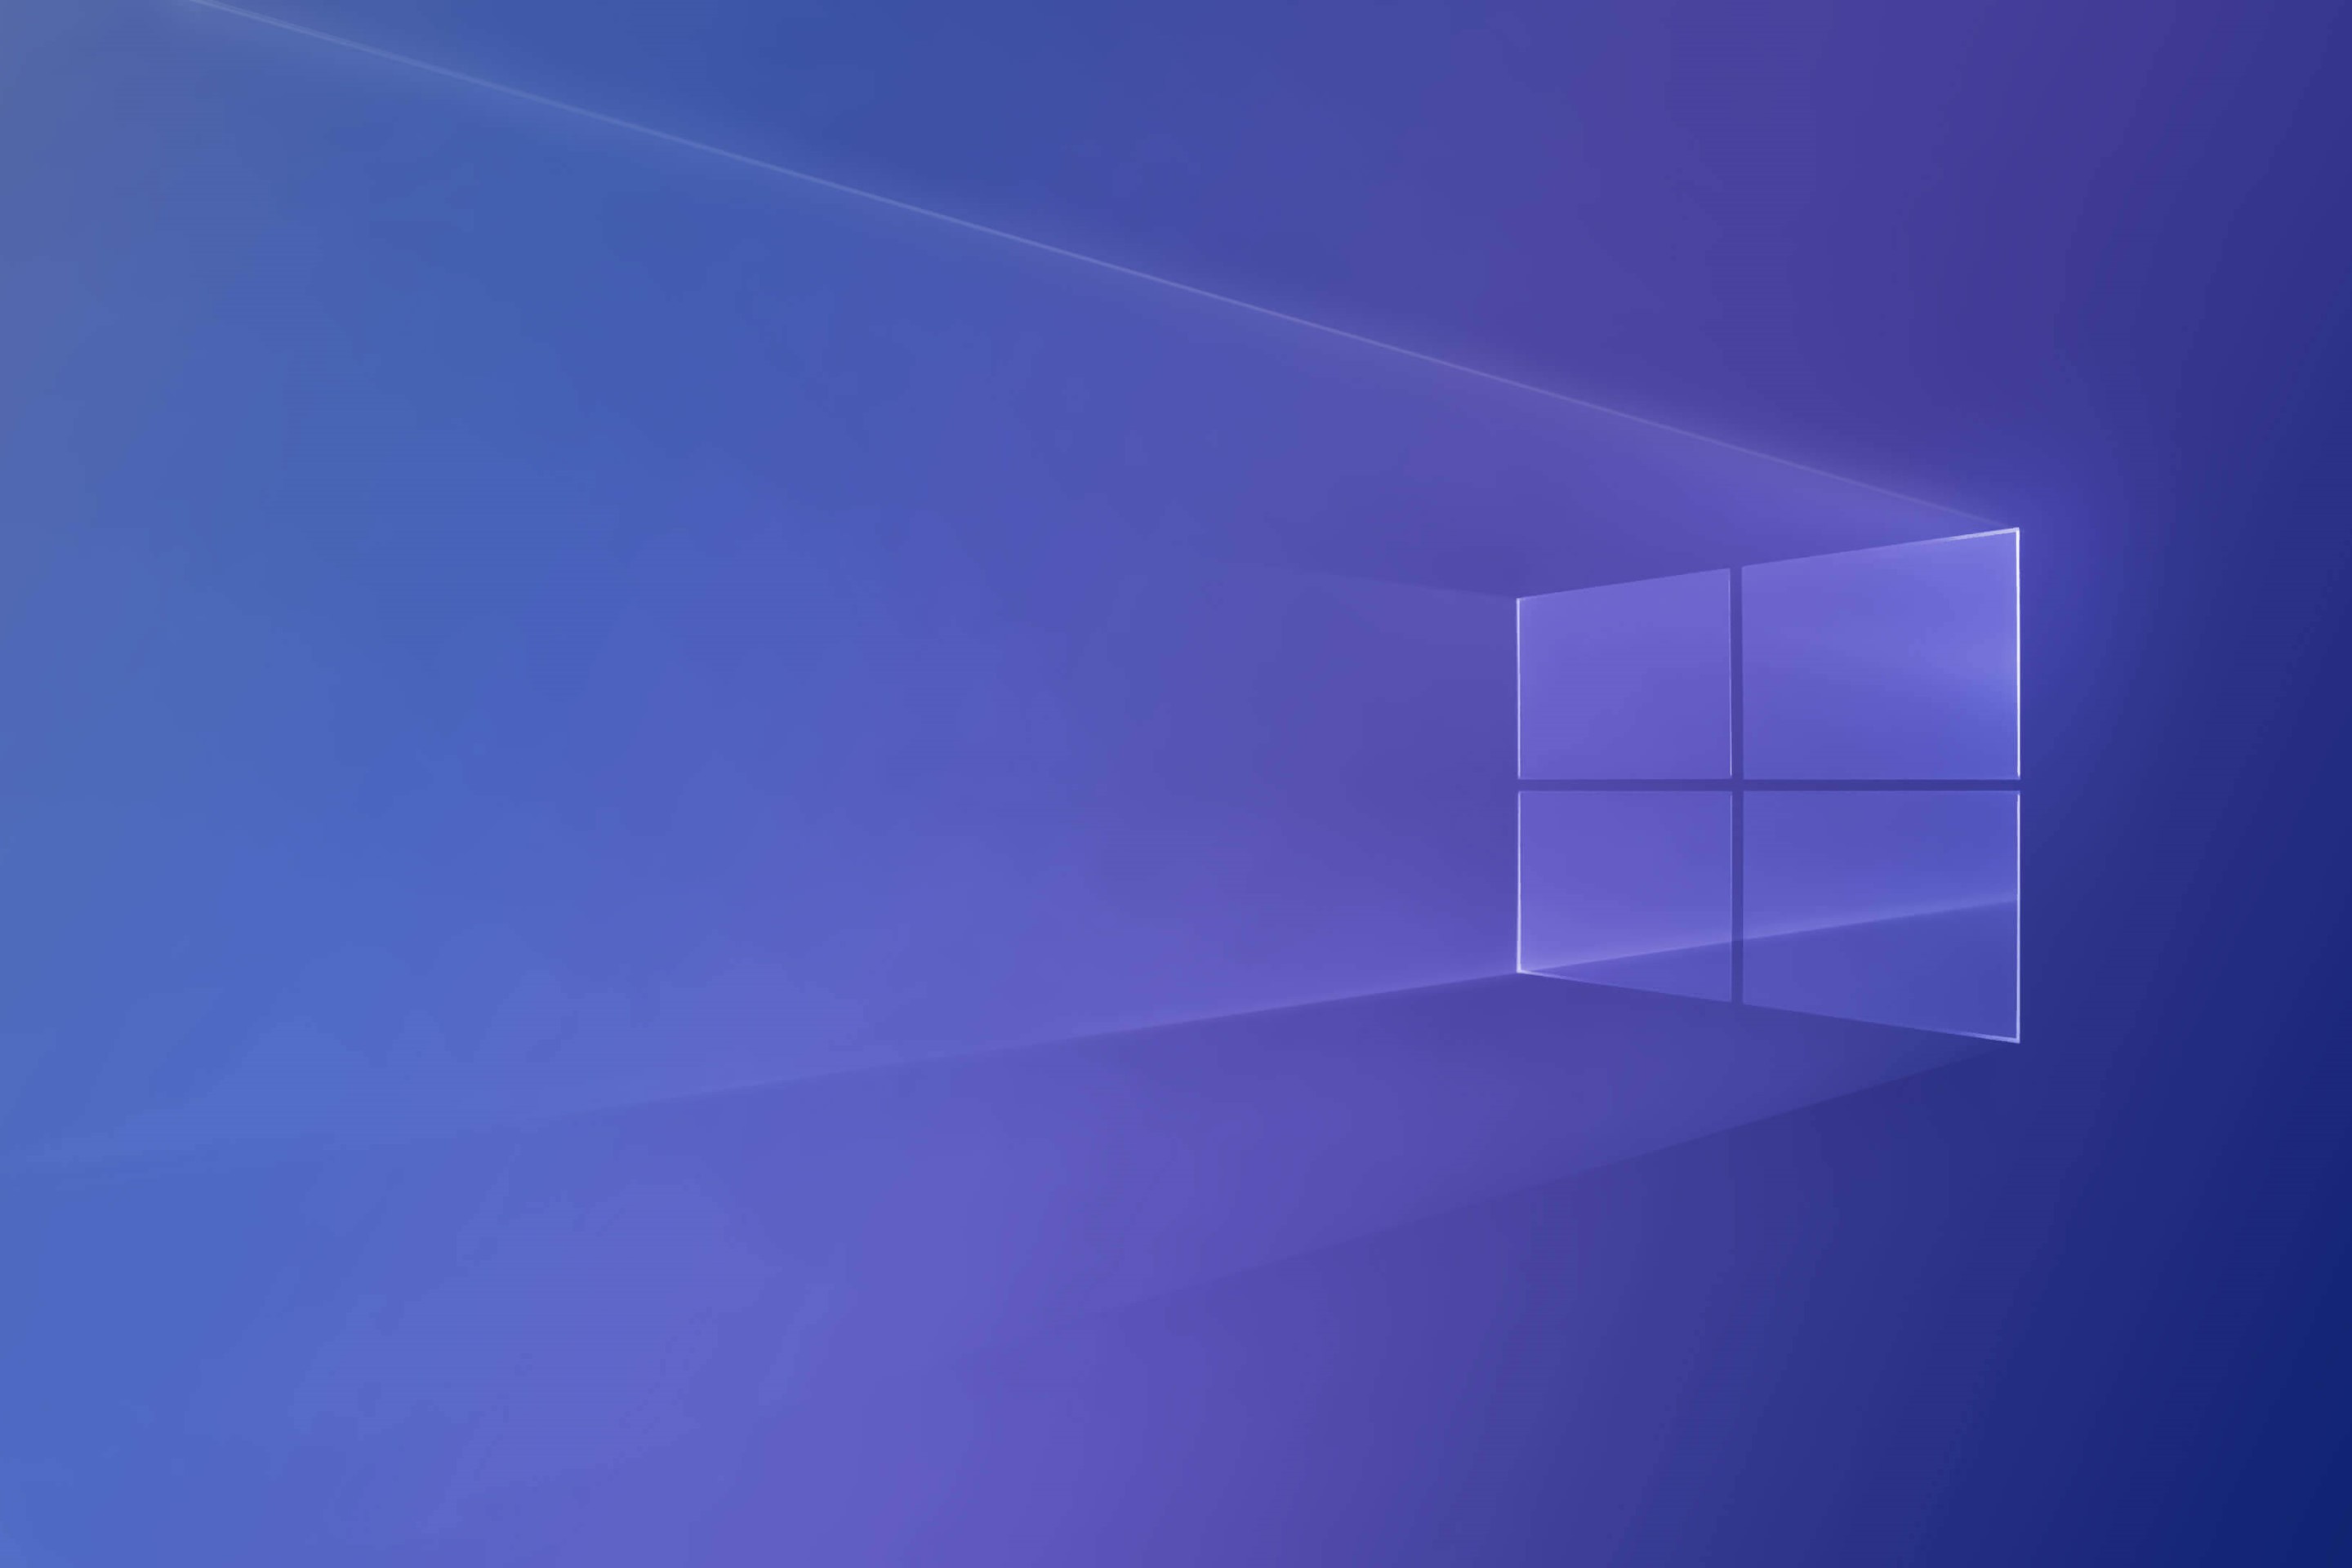 Bạn muốn trang trí màn hình Windows 10 của mình bằng một hình nền độc đáo và đẹp mắt? Đừng bỏ qua hình nền Windows 10 màu tím đậm của punnvx trên trang web WallpaperHub! Với thiết kế đặc biệt và màu sắc tươi sáng, hình nền này sẽ làm cho máy tính của bạn trở nên đầy màu sắc và độc đáo. Hãy tải về miễn phí hình nền này và trang trí màn hình của bạn ngay bây giờ!